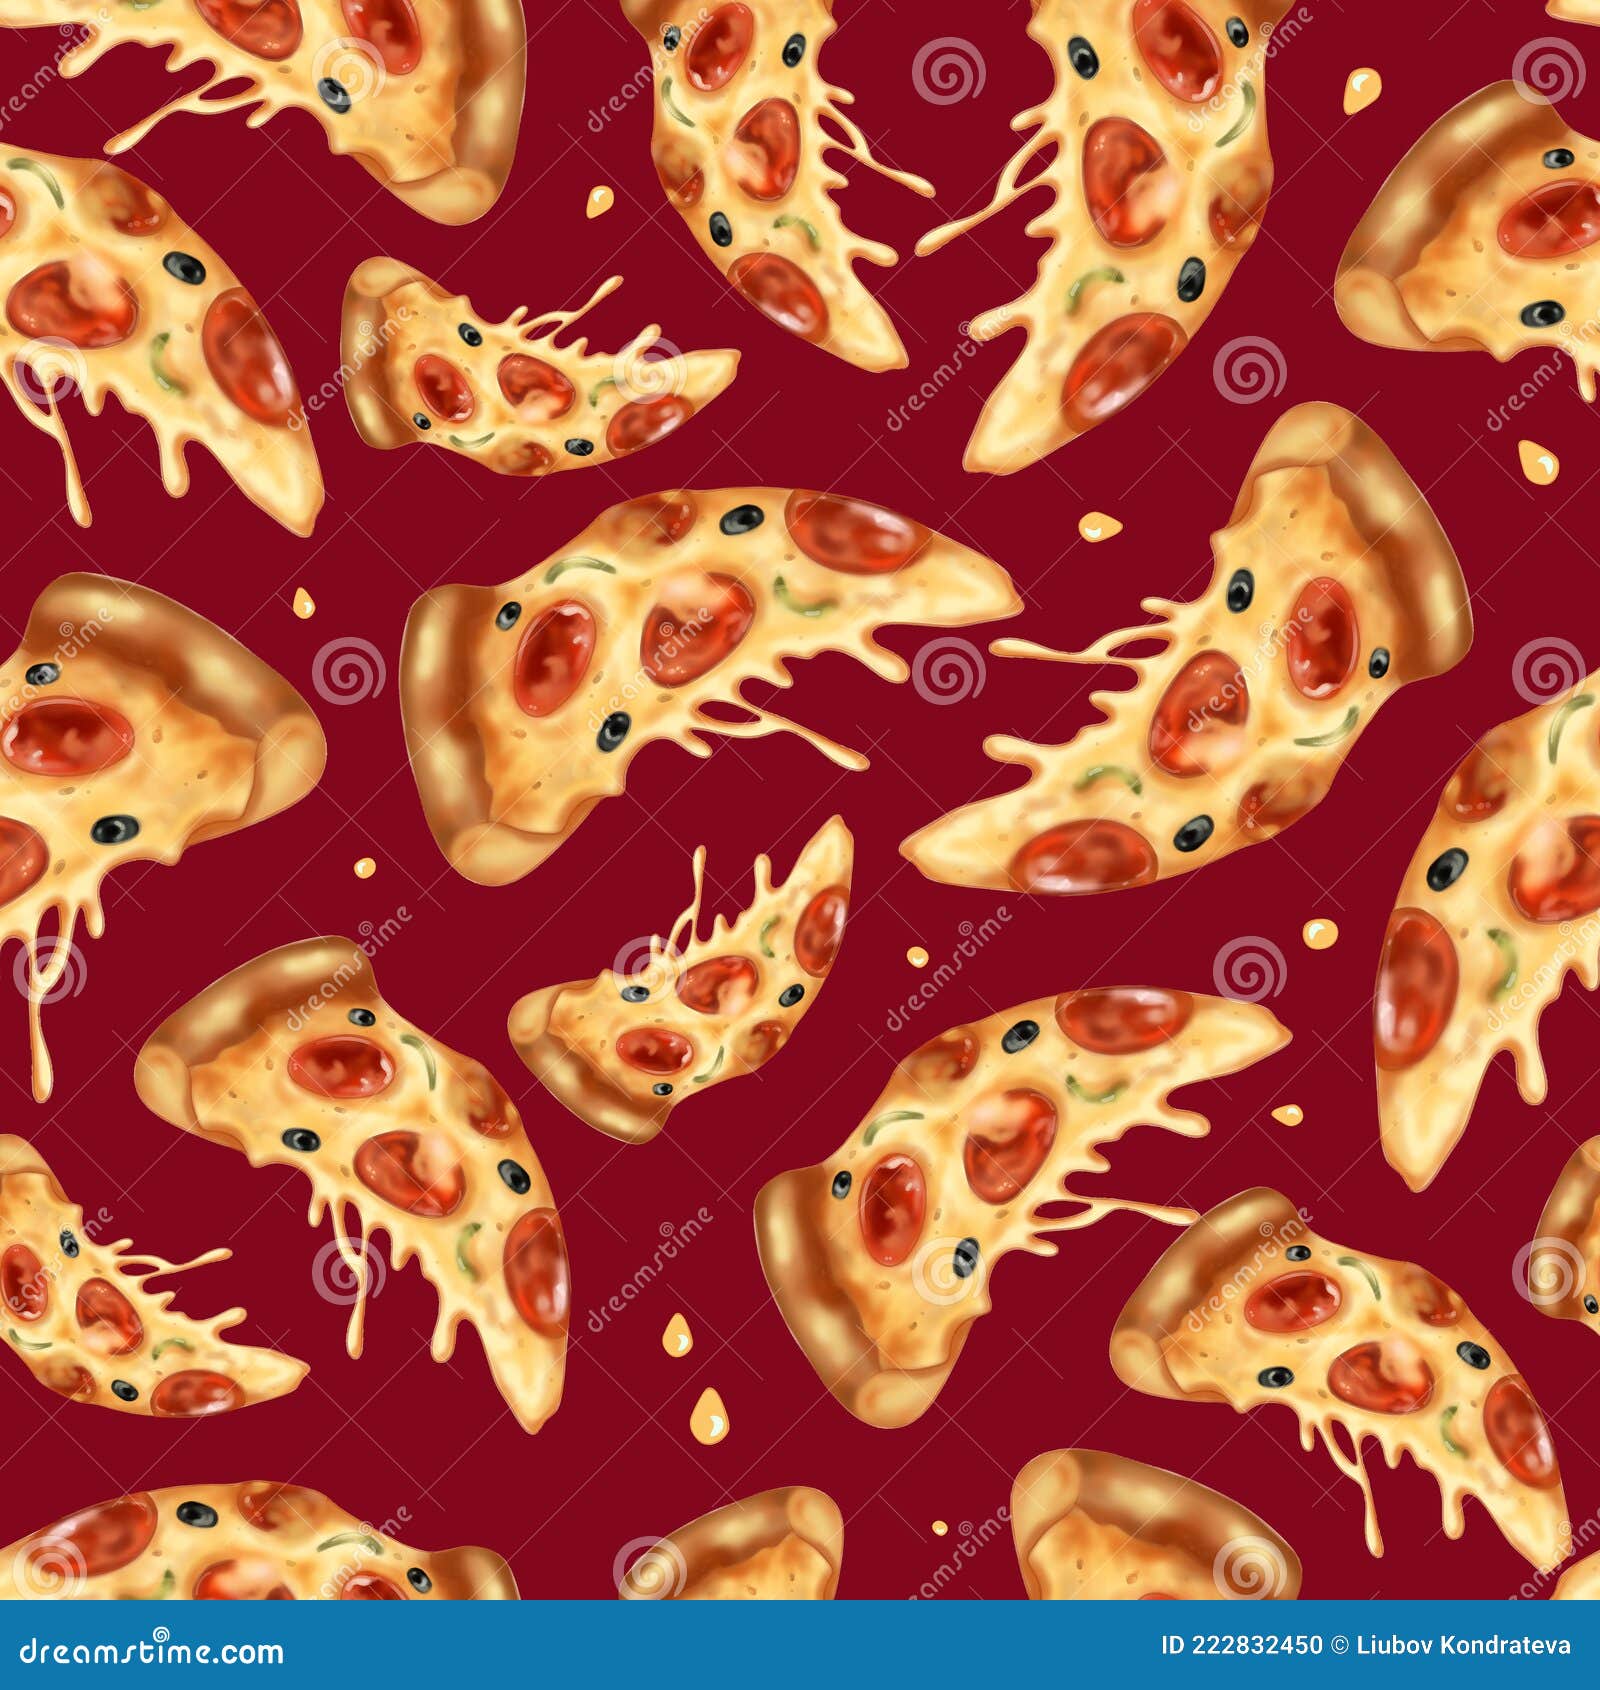 Bạn đang tìm kiếm món pizza đầy đủ gia vị và hấp dẫn? Hãy xem hình ảnh liên quan đến pepperoni pizza - một món pizza đặc trưng của nước Ý sẽ giúp bạn đáp ứng mong muốn ấy.